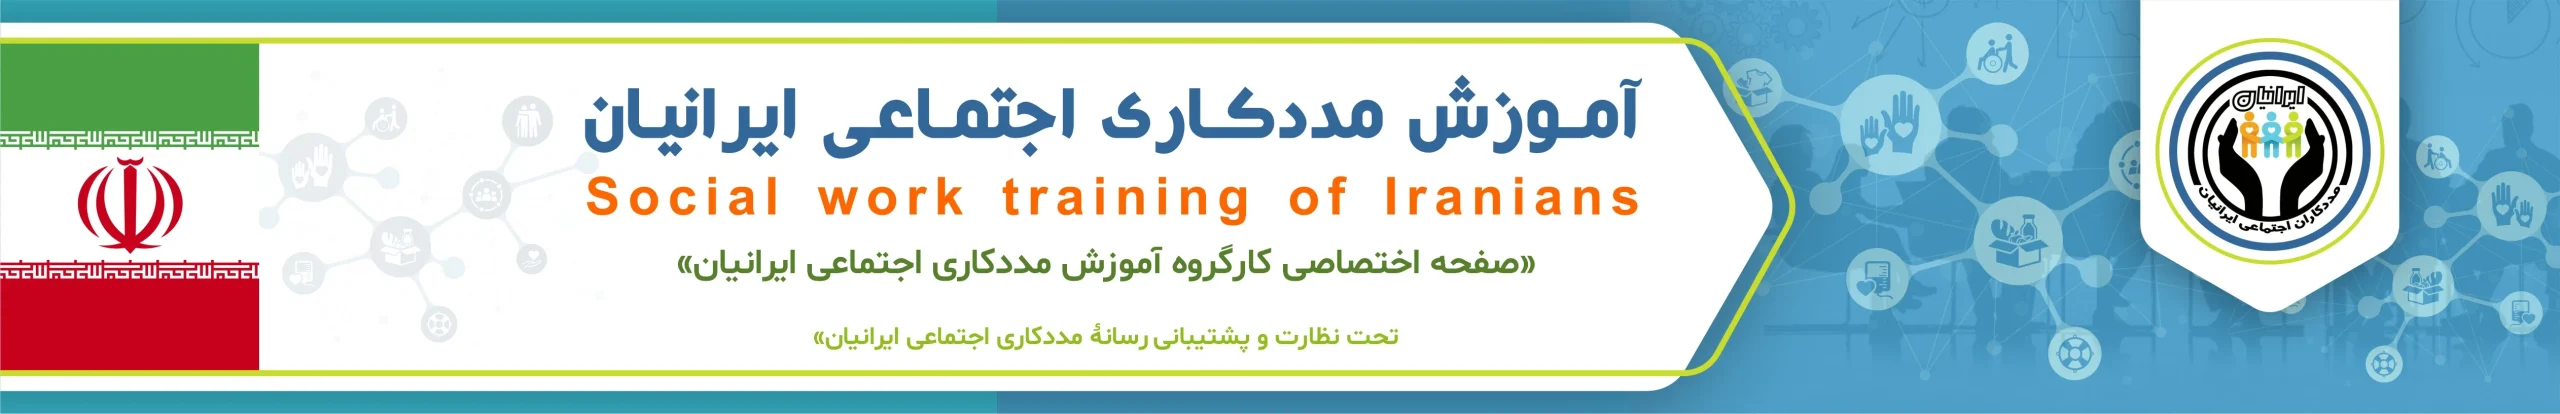 مجله اینترنتی مددکاری اجتماعی ایران